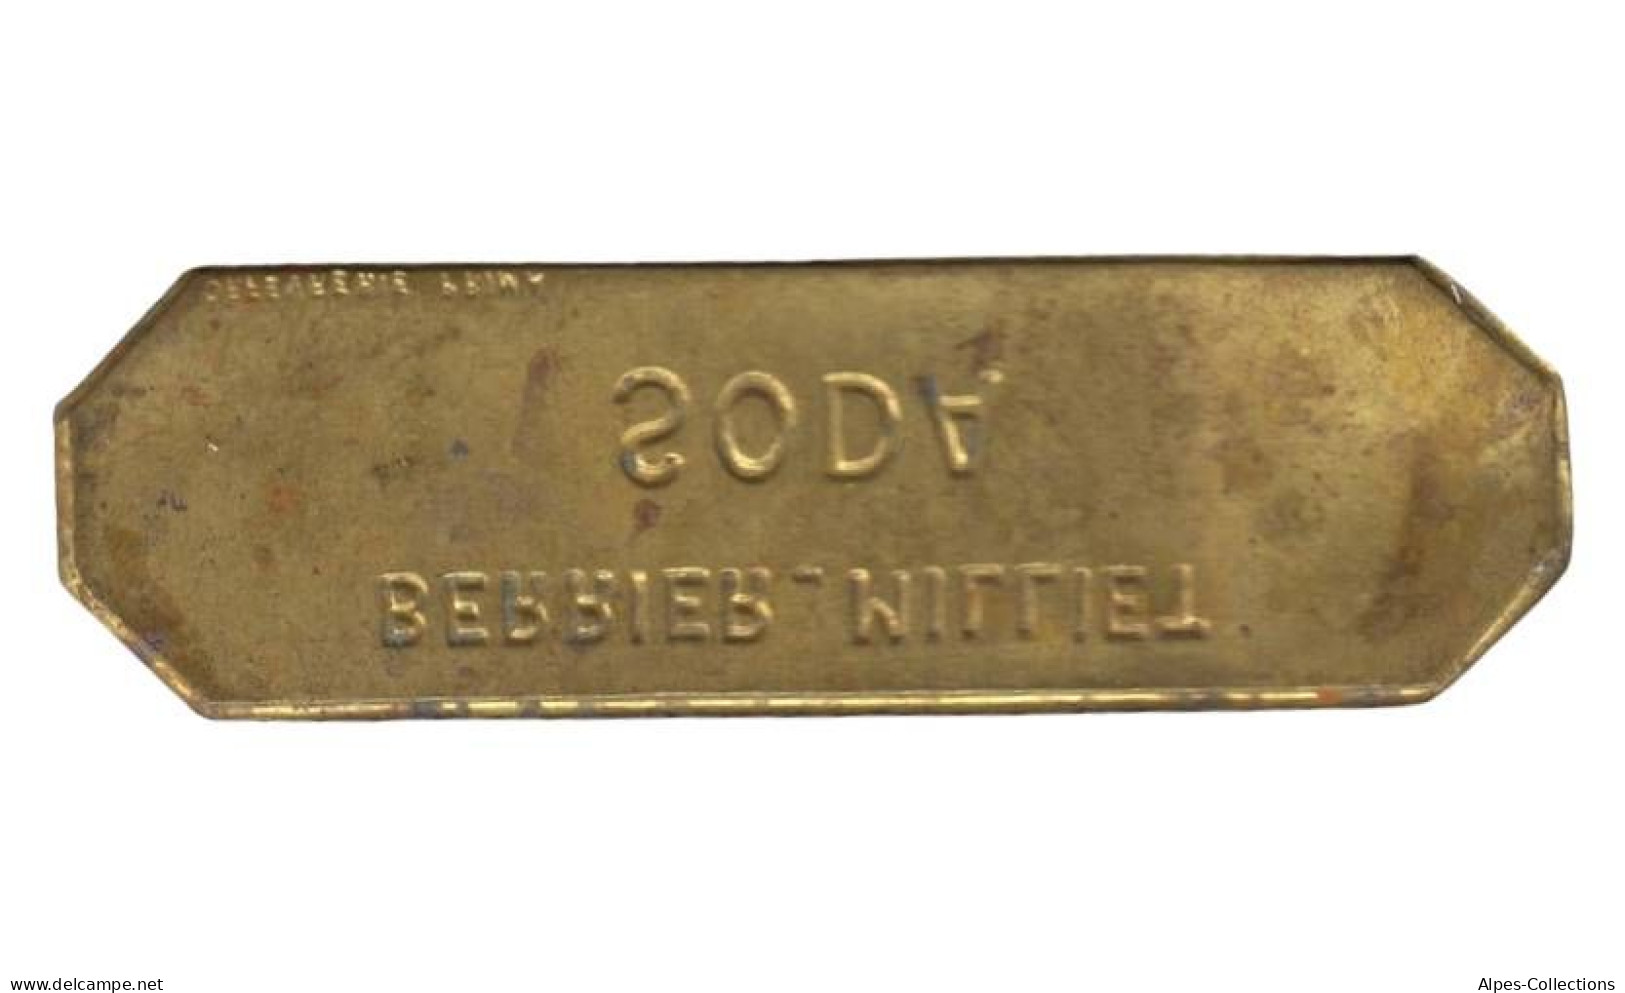 LYON - NR03 - Monnaie De Nécessité - Soda Berrier Milliet - Notgeld